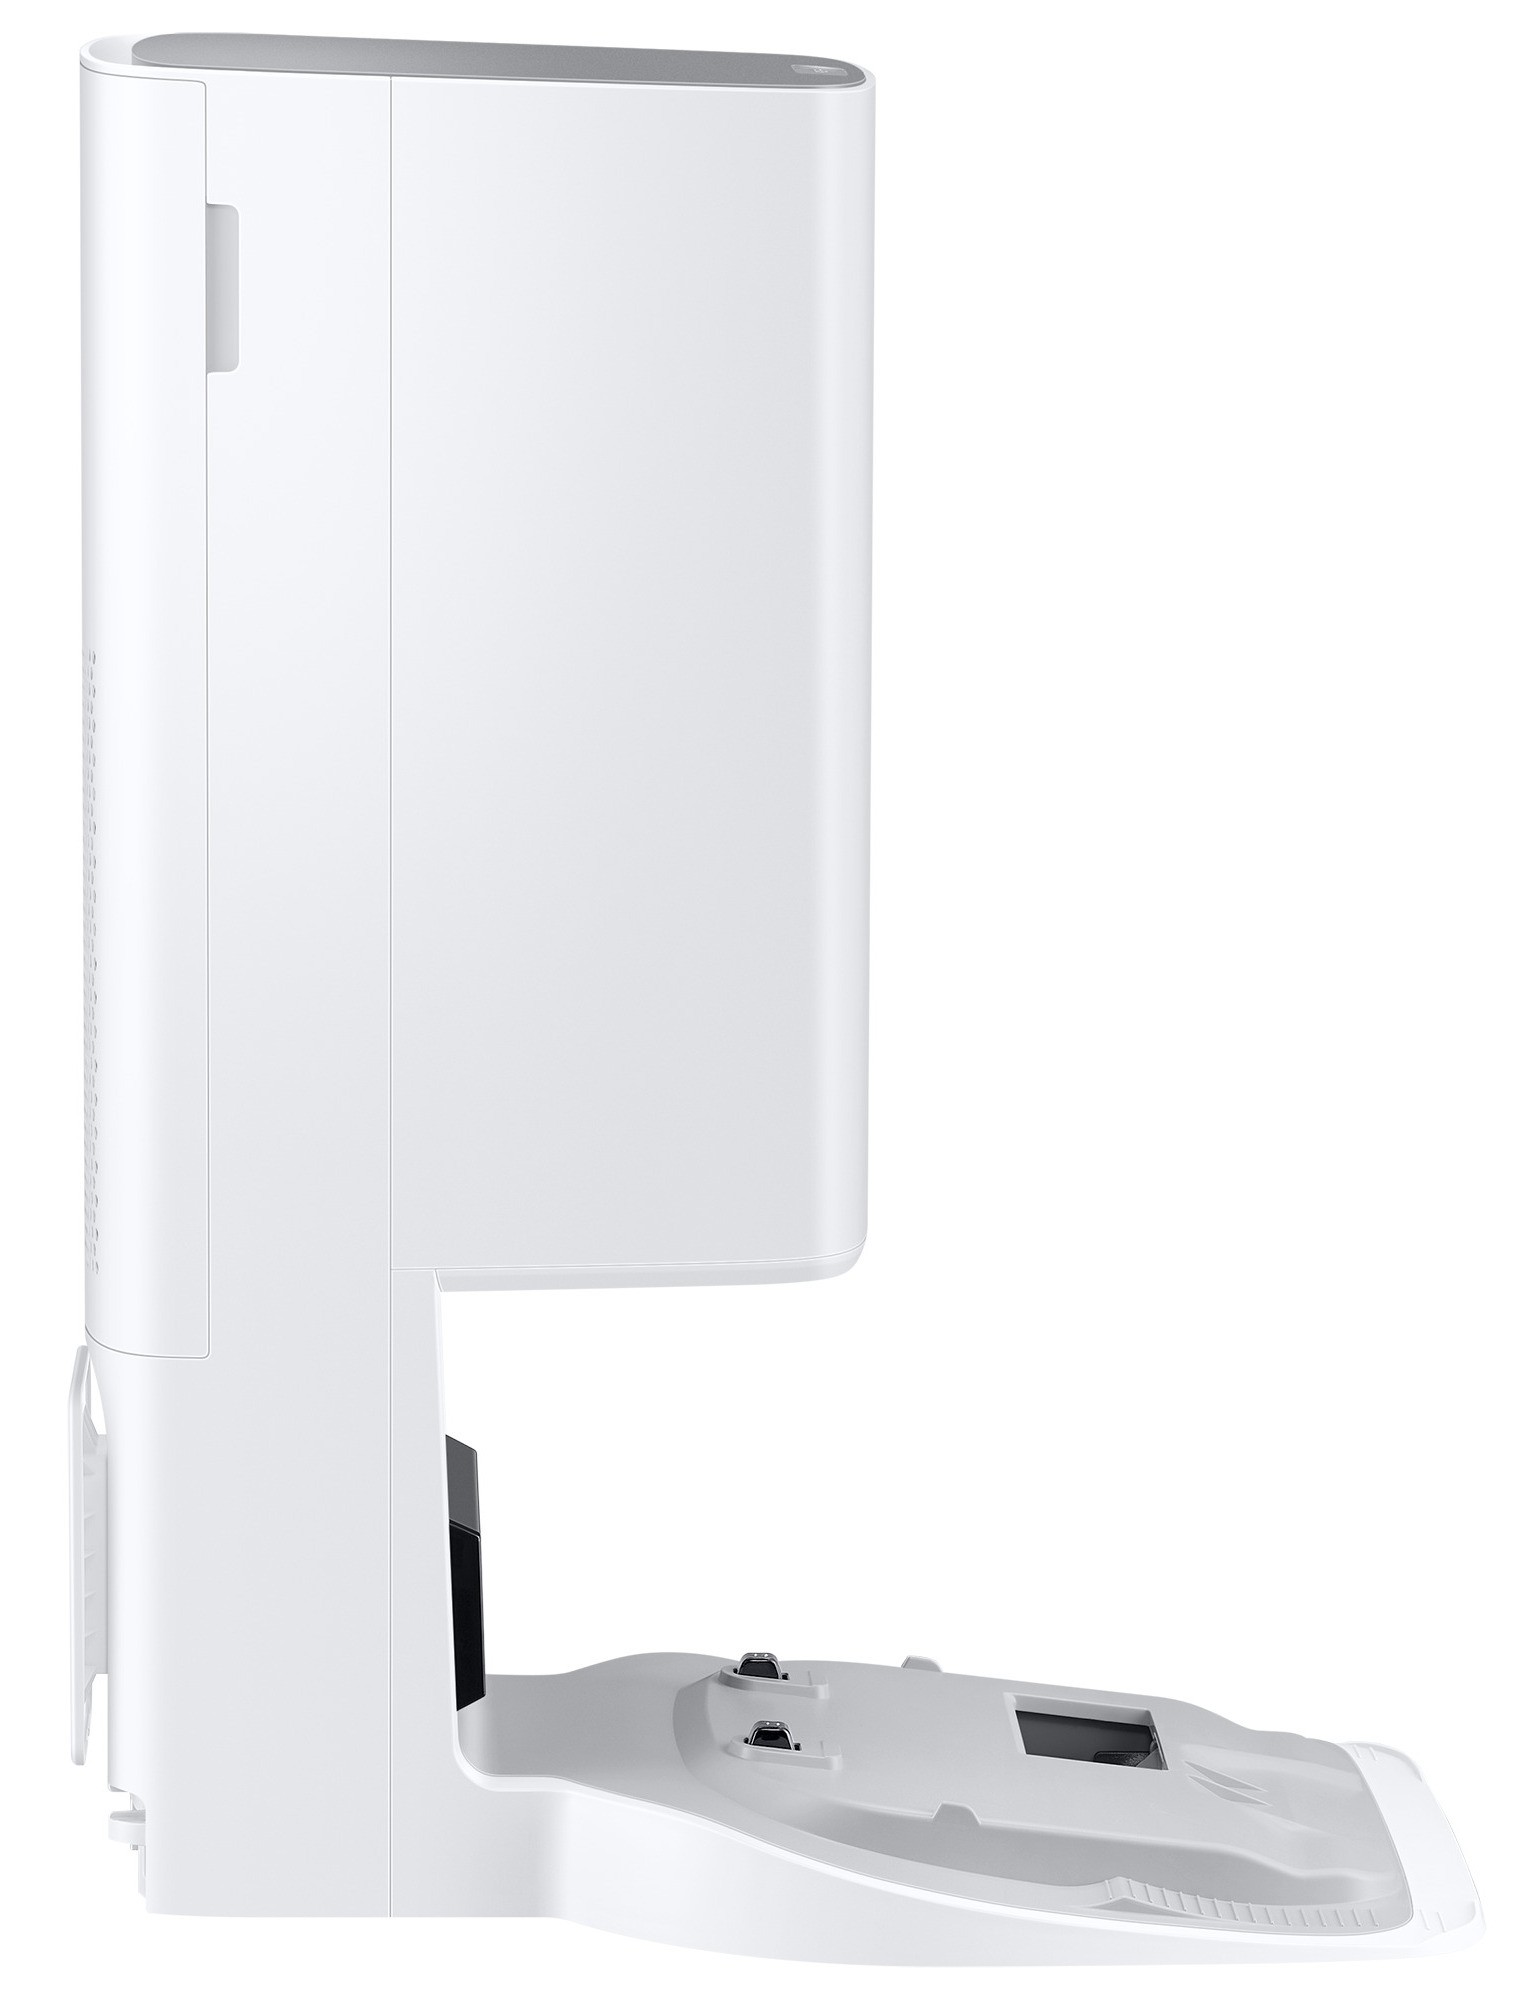 Робот-пылесос Samsung VR30T85513W/UK внешний вид - фото 9